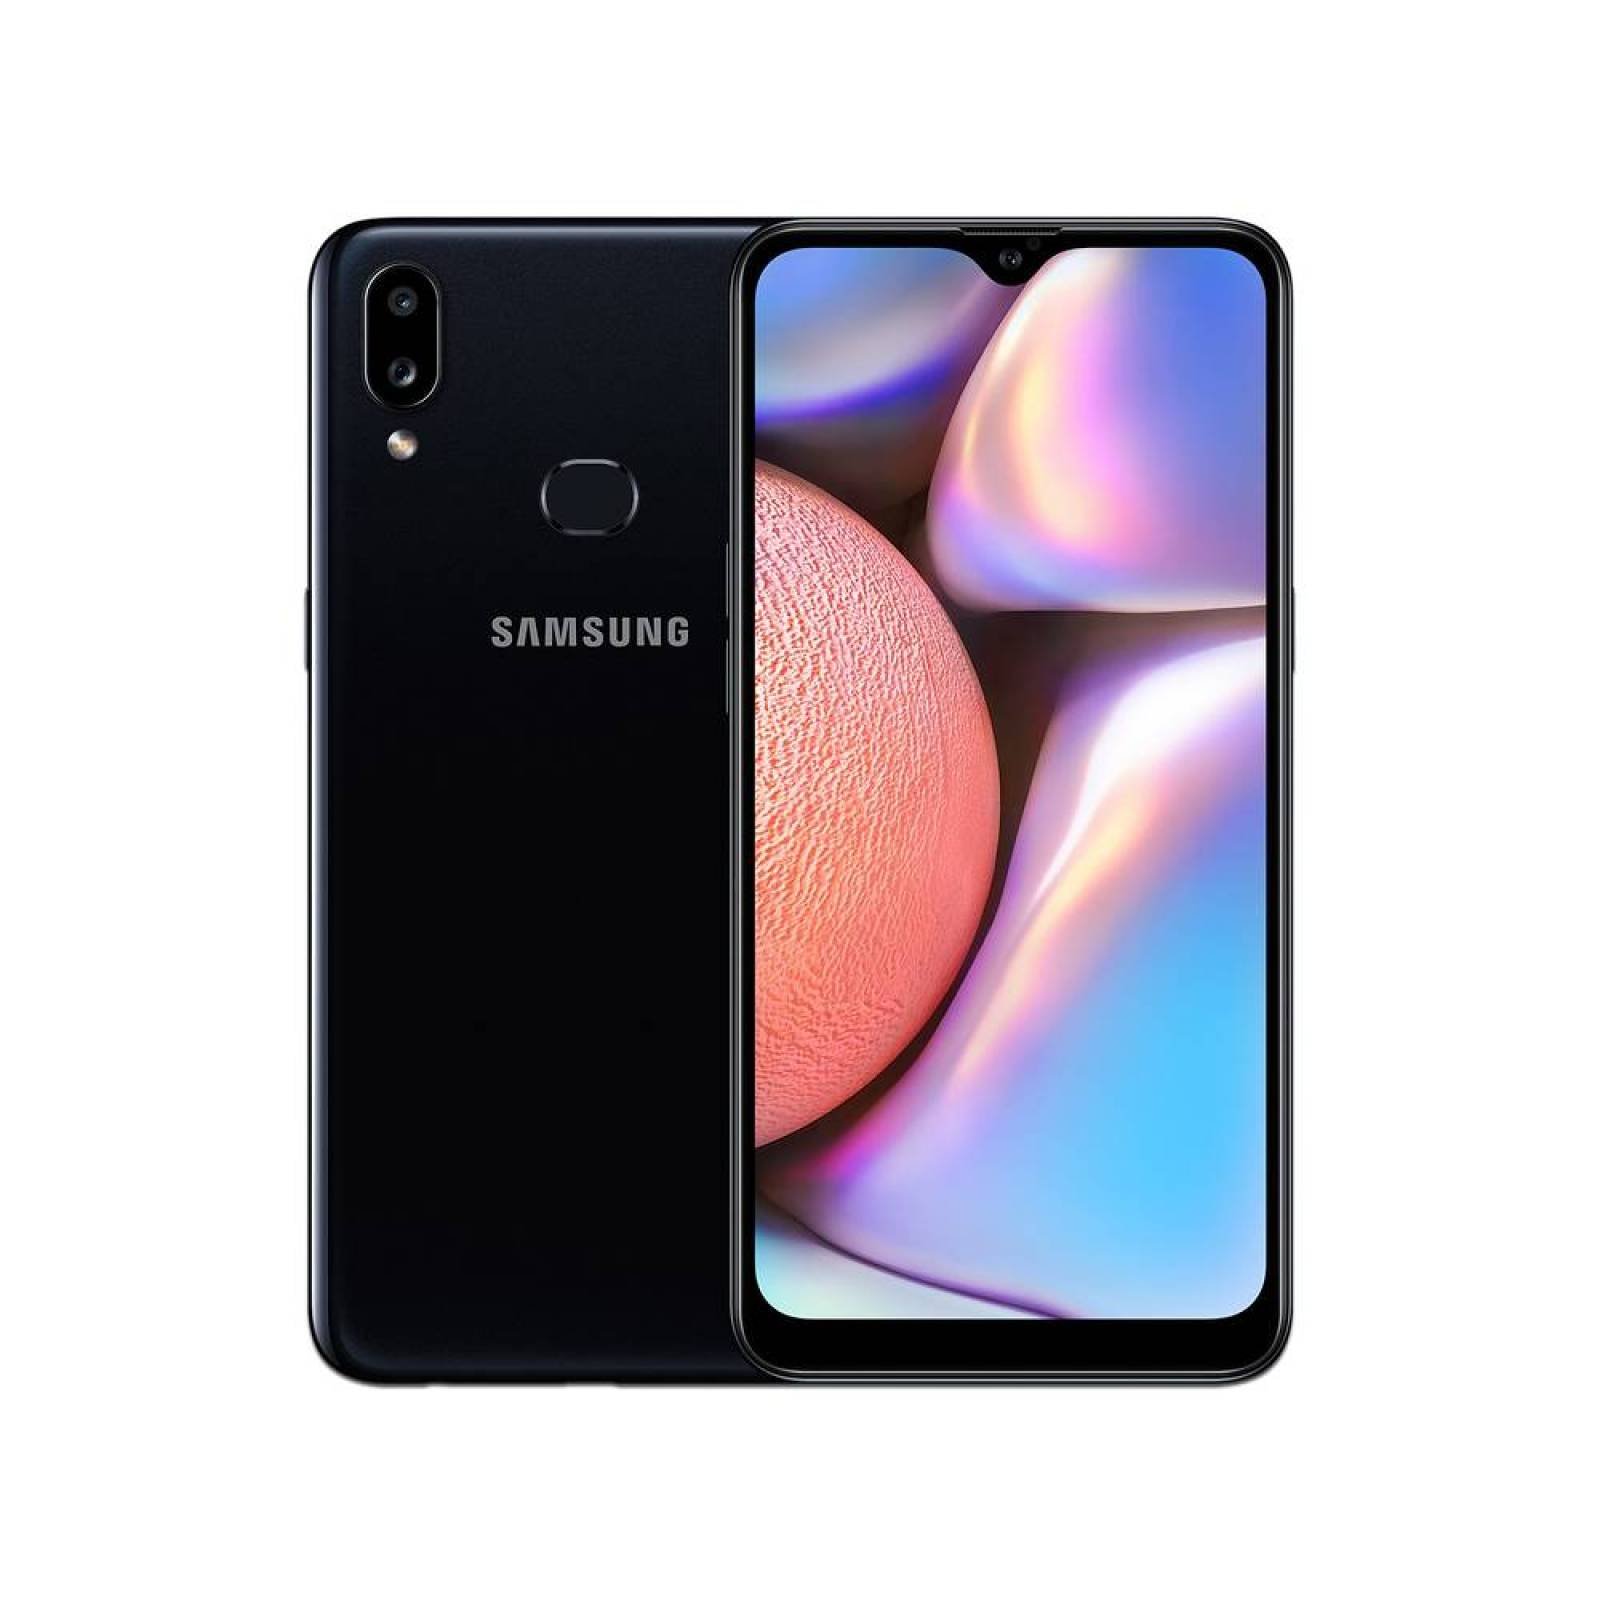 Smartphone Samsung Galaxy A10s Procesador Octa Core Memoria RAM de 2GB Almacenamiento de 32GB Pantalla de 6 pulgadas CÃ¡mara principal de 13 MP Android 9 Color Negro